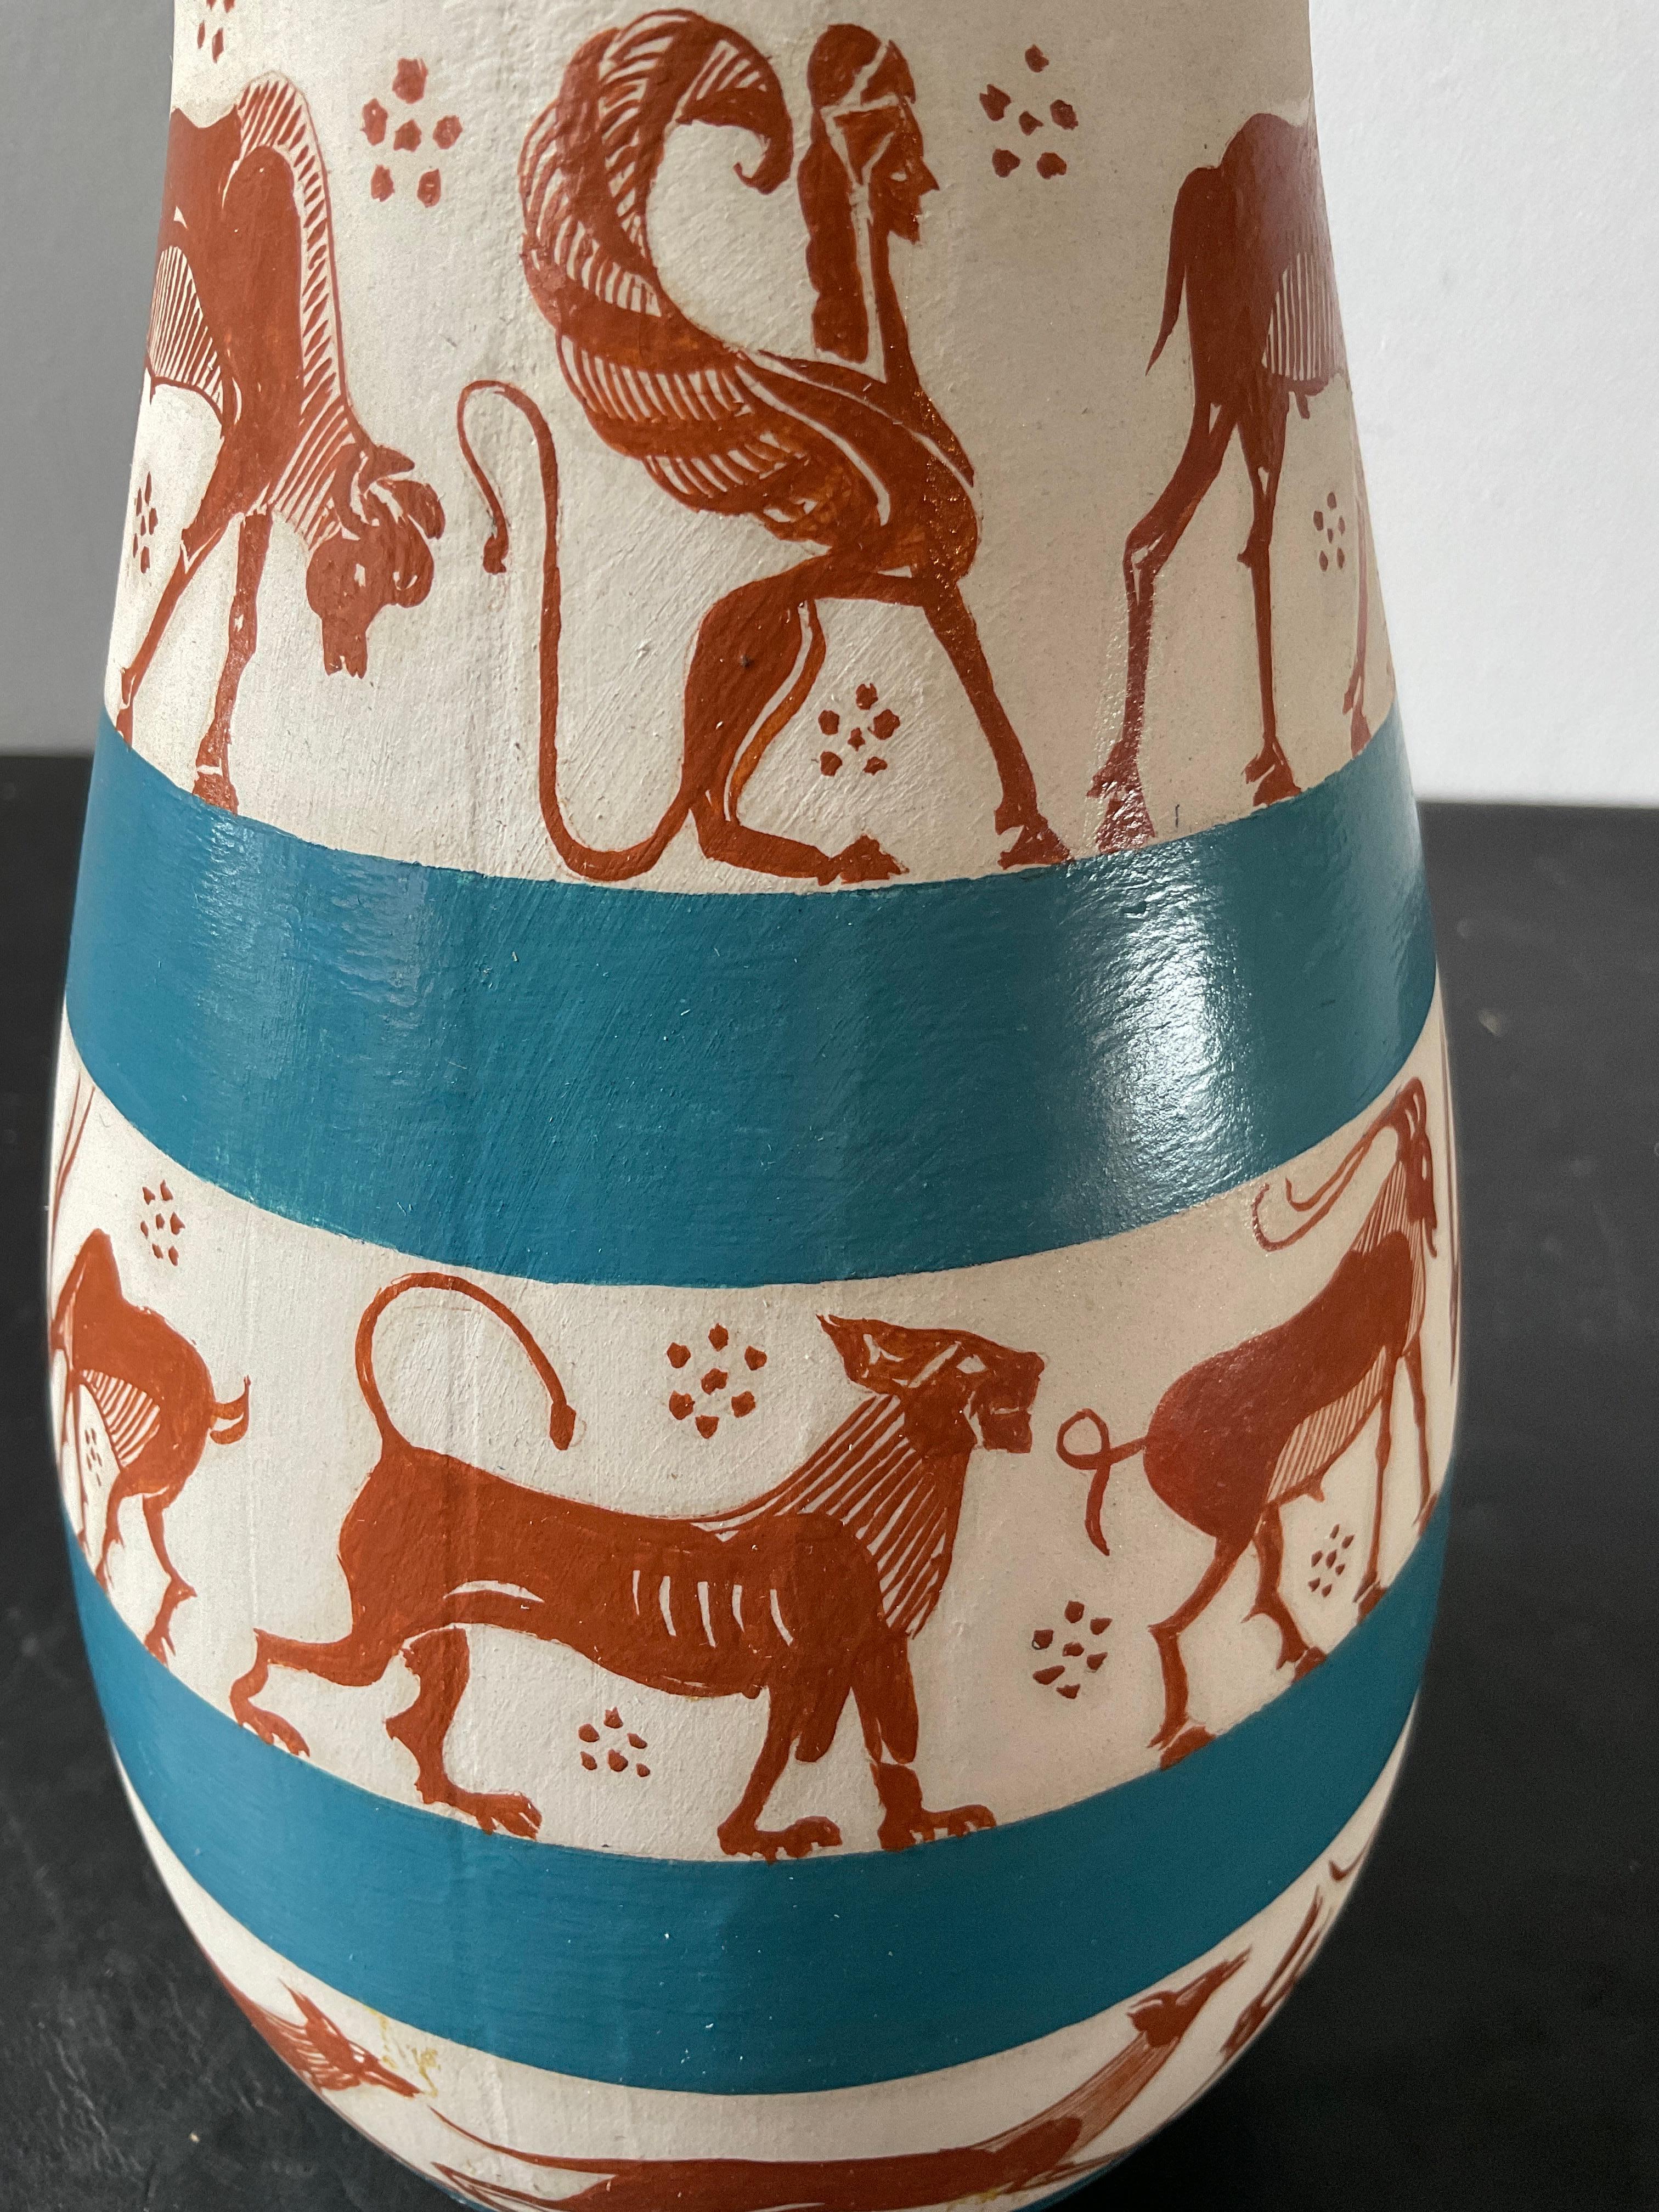 1975 Richard Arbib Ceramic Vase Decorated  with Animals For Sale 2